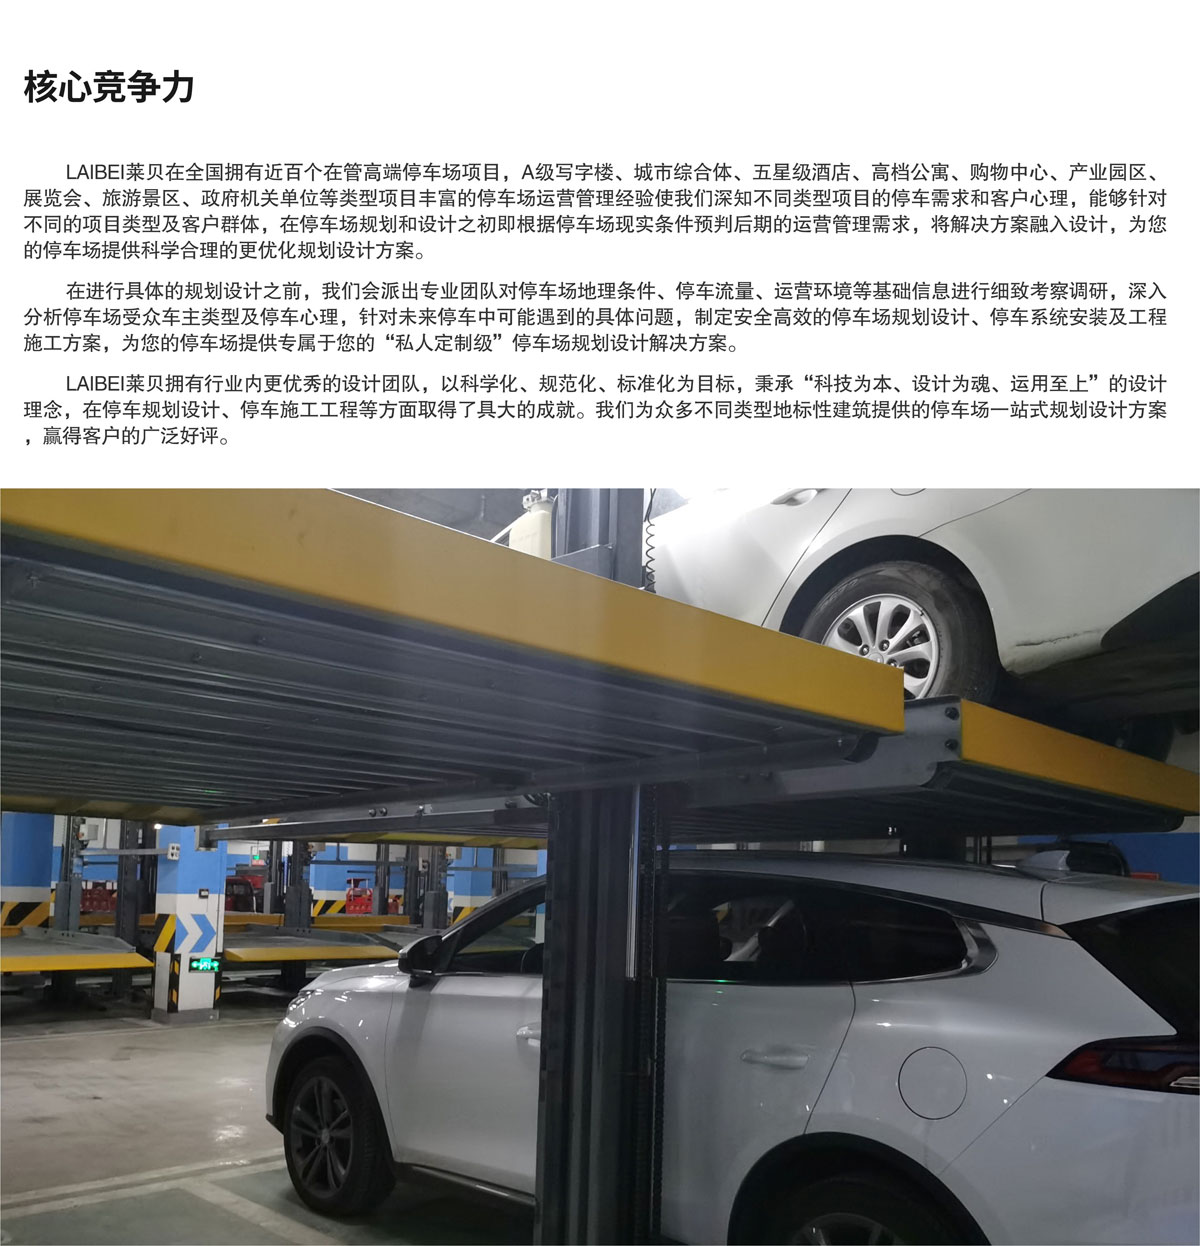 贵阳莱贝停车规划设计核心竞争力.jpg